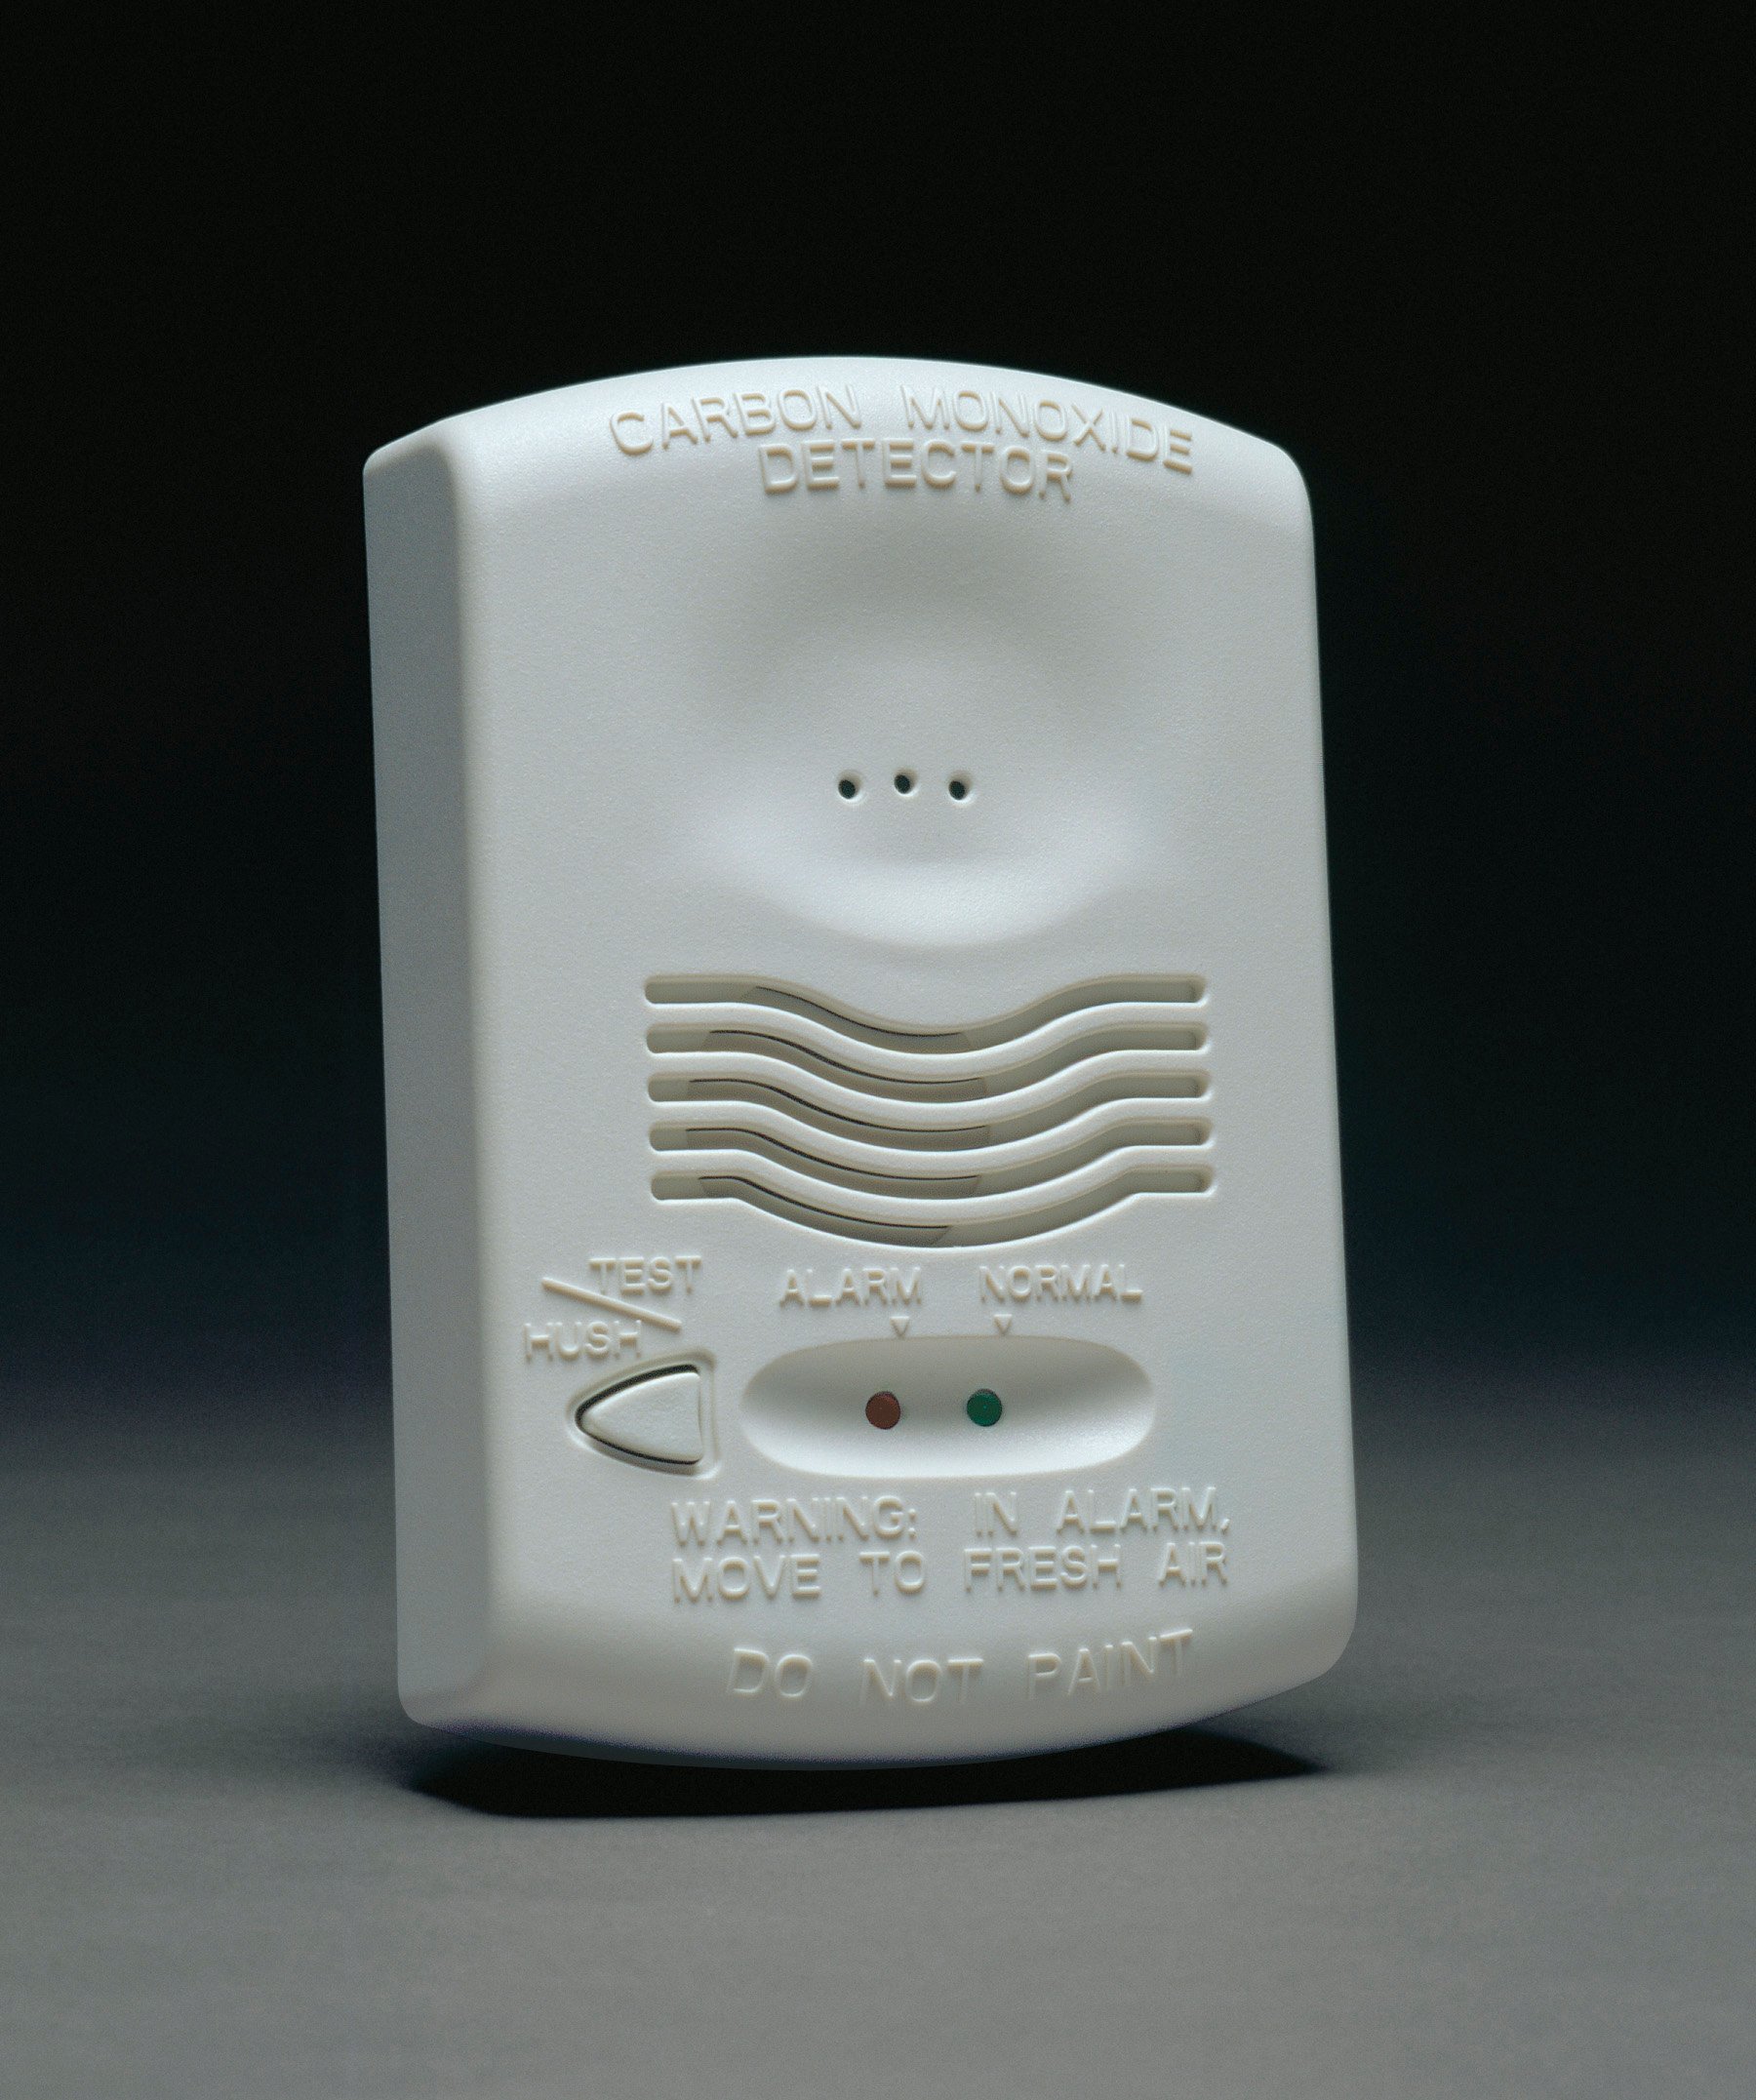 Carbon Monoxide Detector with RealTest (CO1224T)